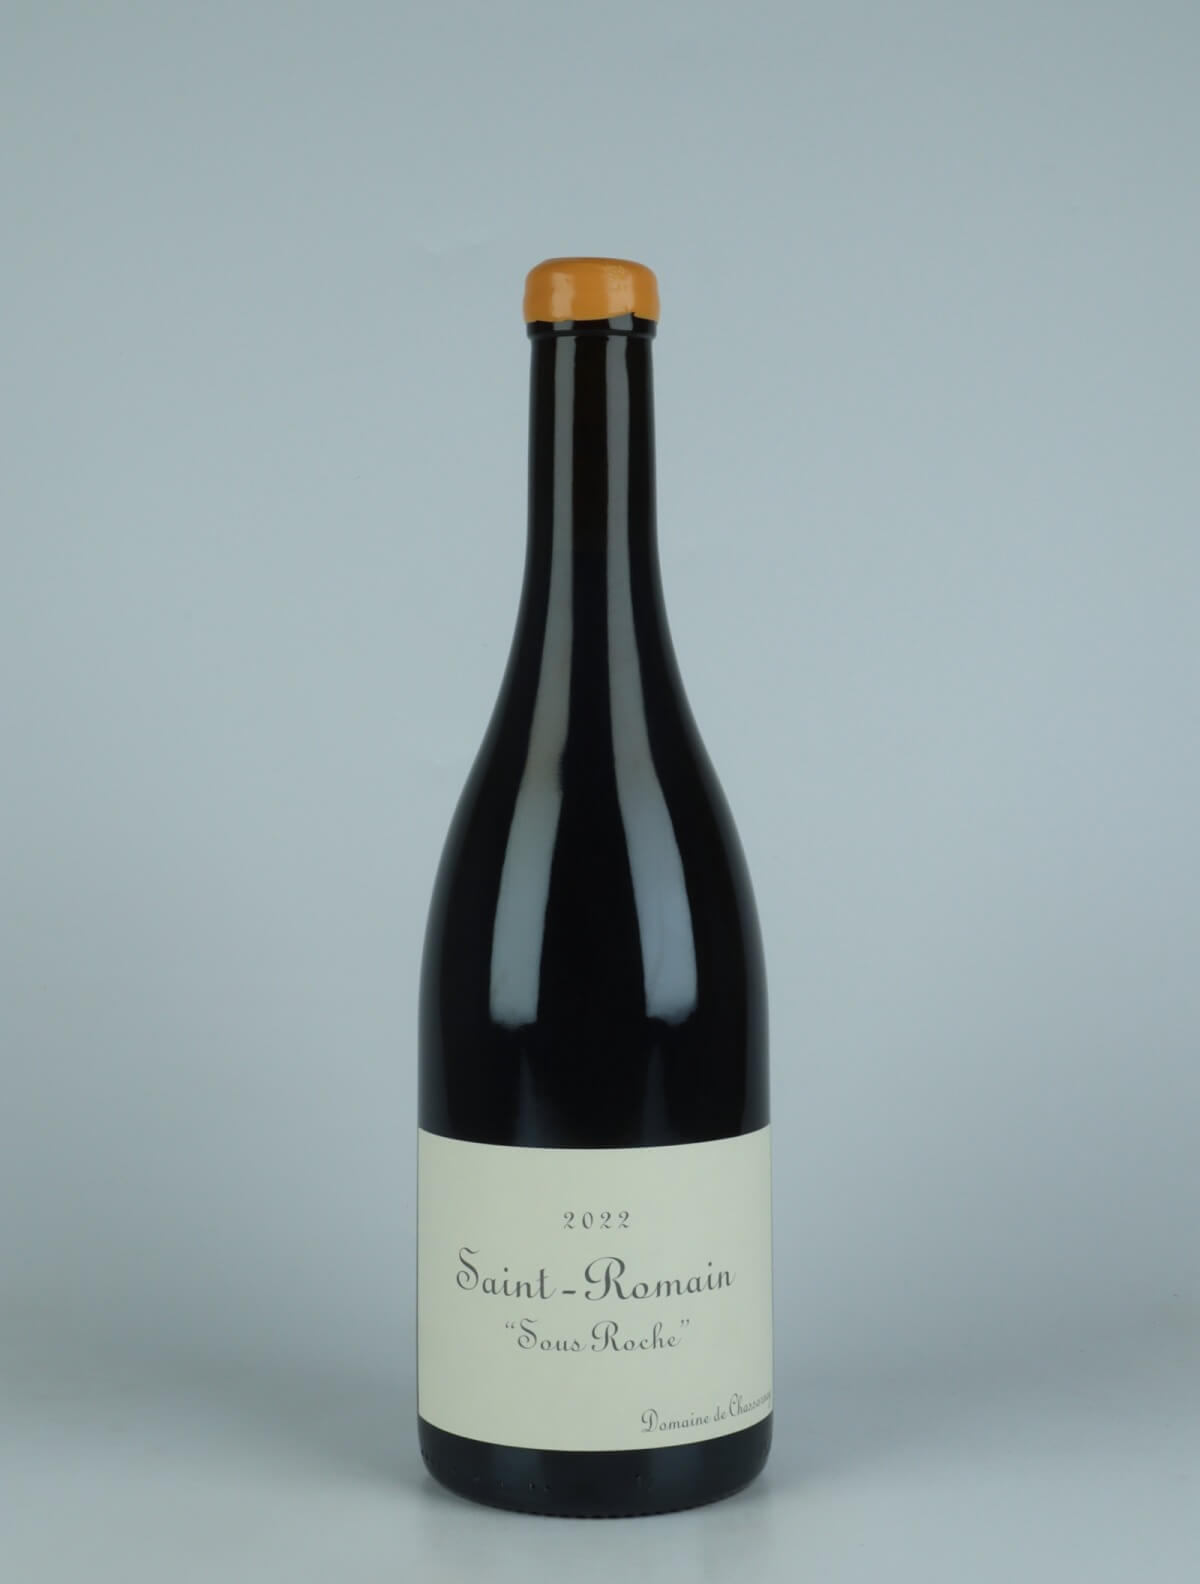 En flaske 2022 Saint Romain Rouge - Sous Roche Rødvin fra Domaine de Chassorney, Bourgogne i Frankrig